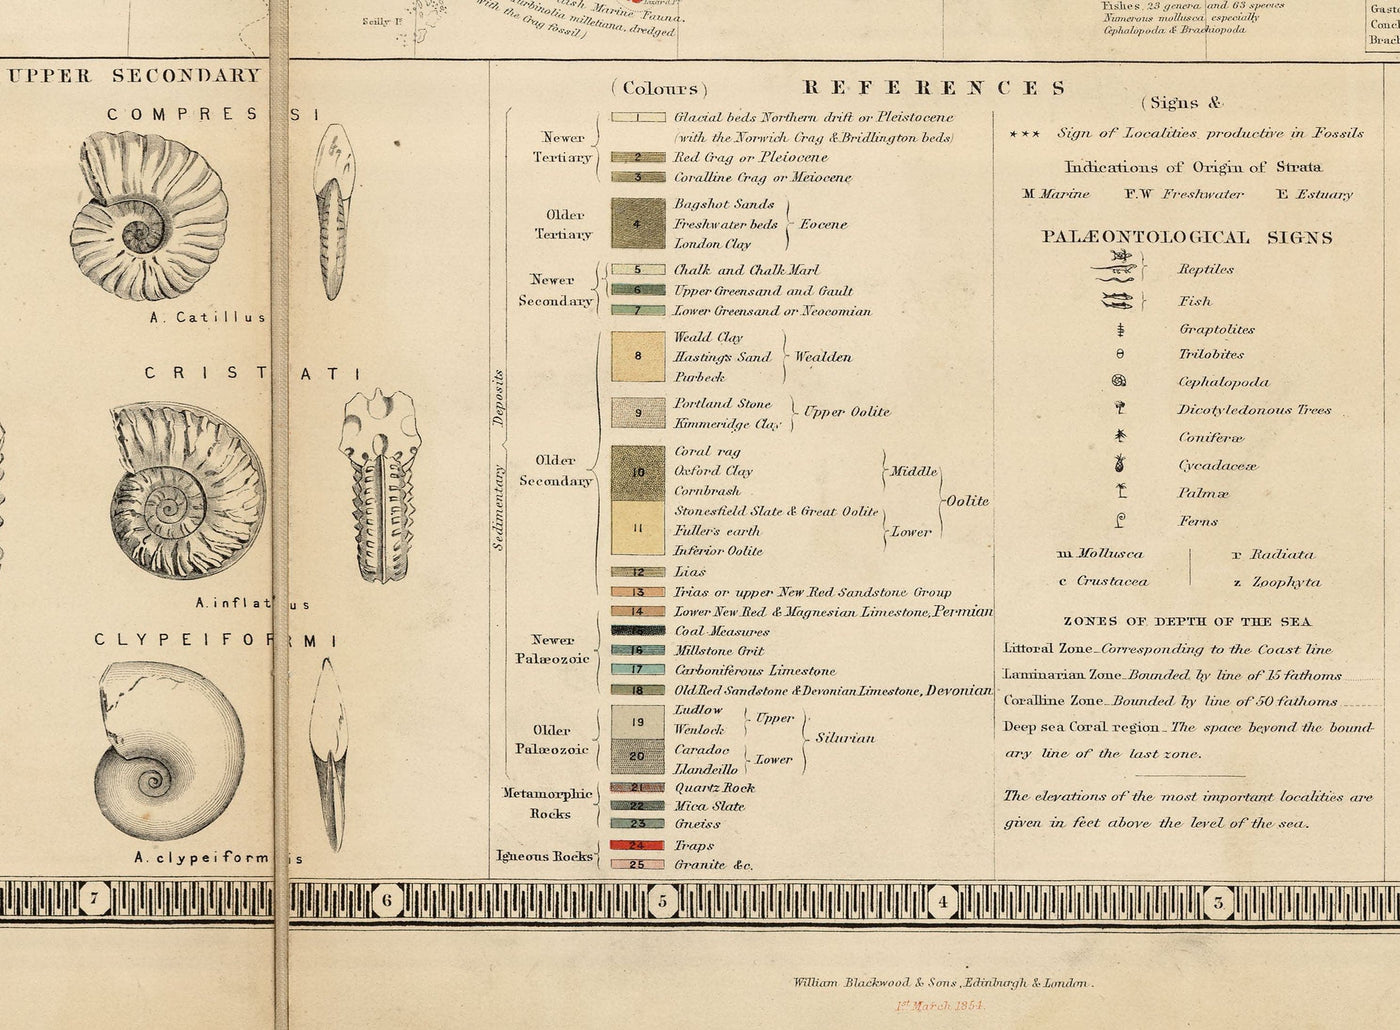 Alte Geologie- und Fossilienkarte der Britischen Inseln, 1854, von A.K. Johnston und Edward Forbes - UK, Schottland, Irland, Paläontologie